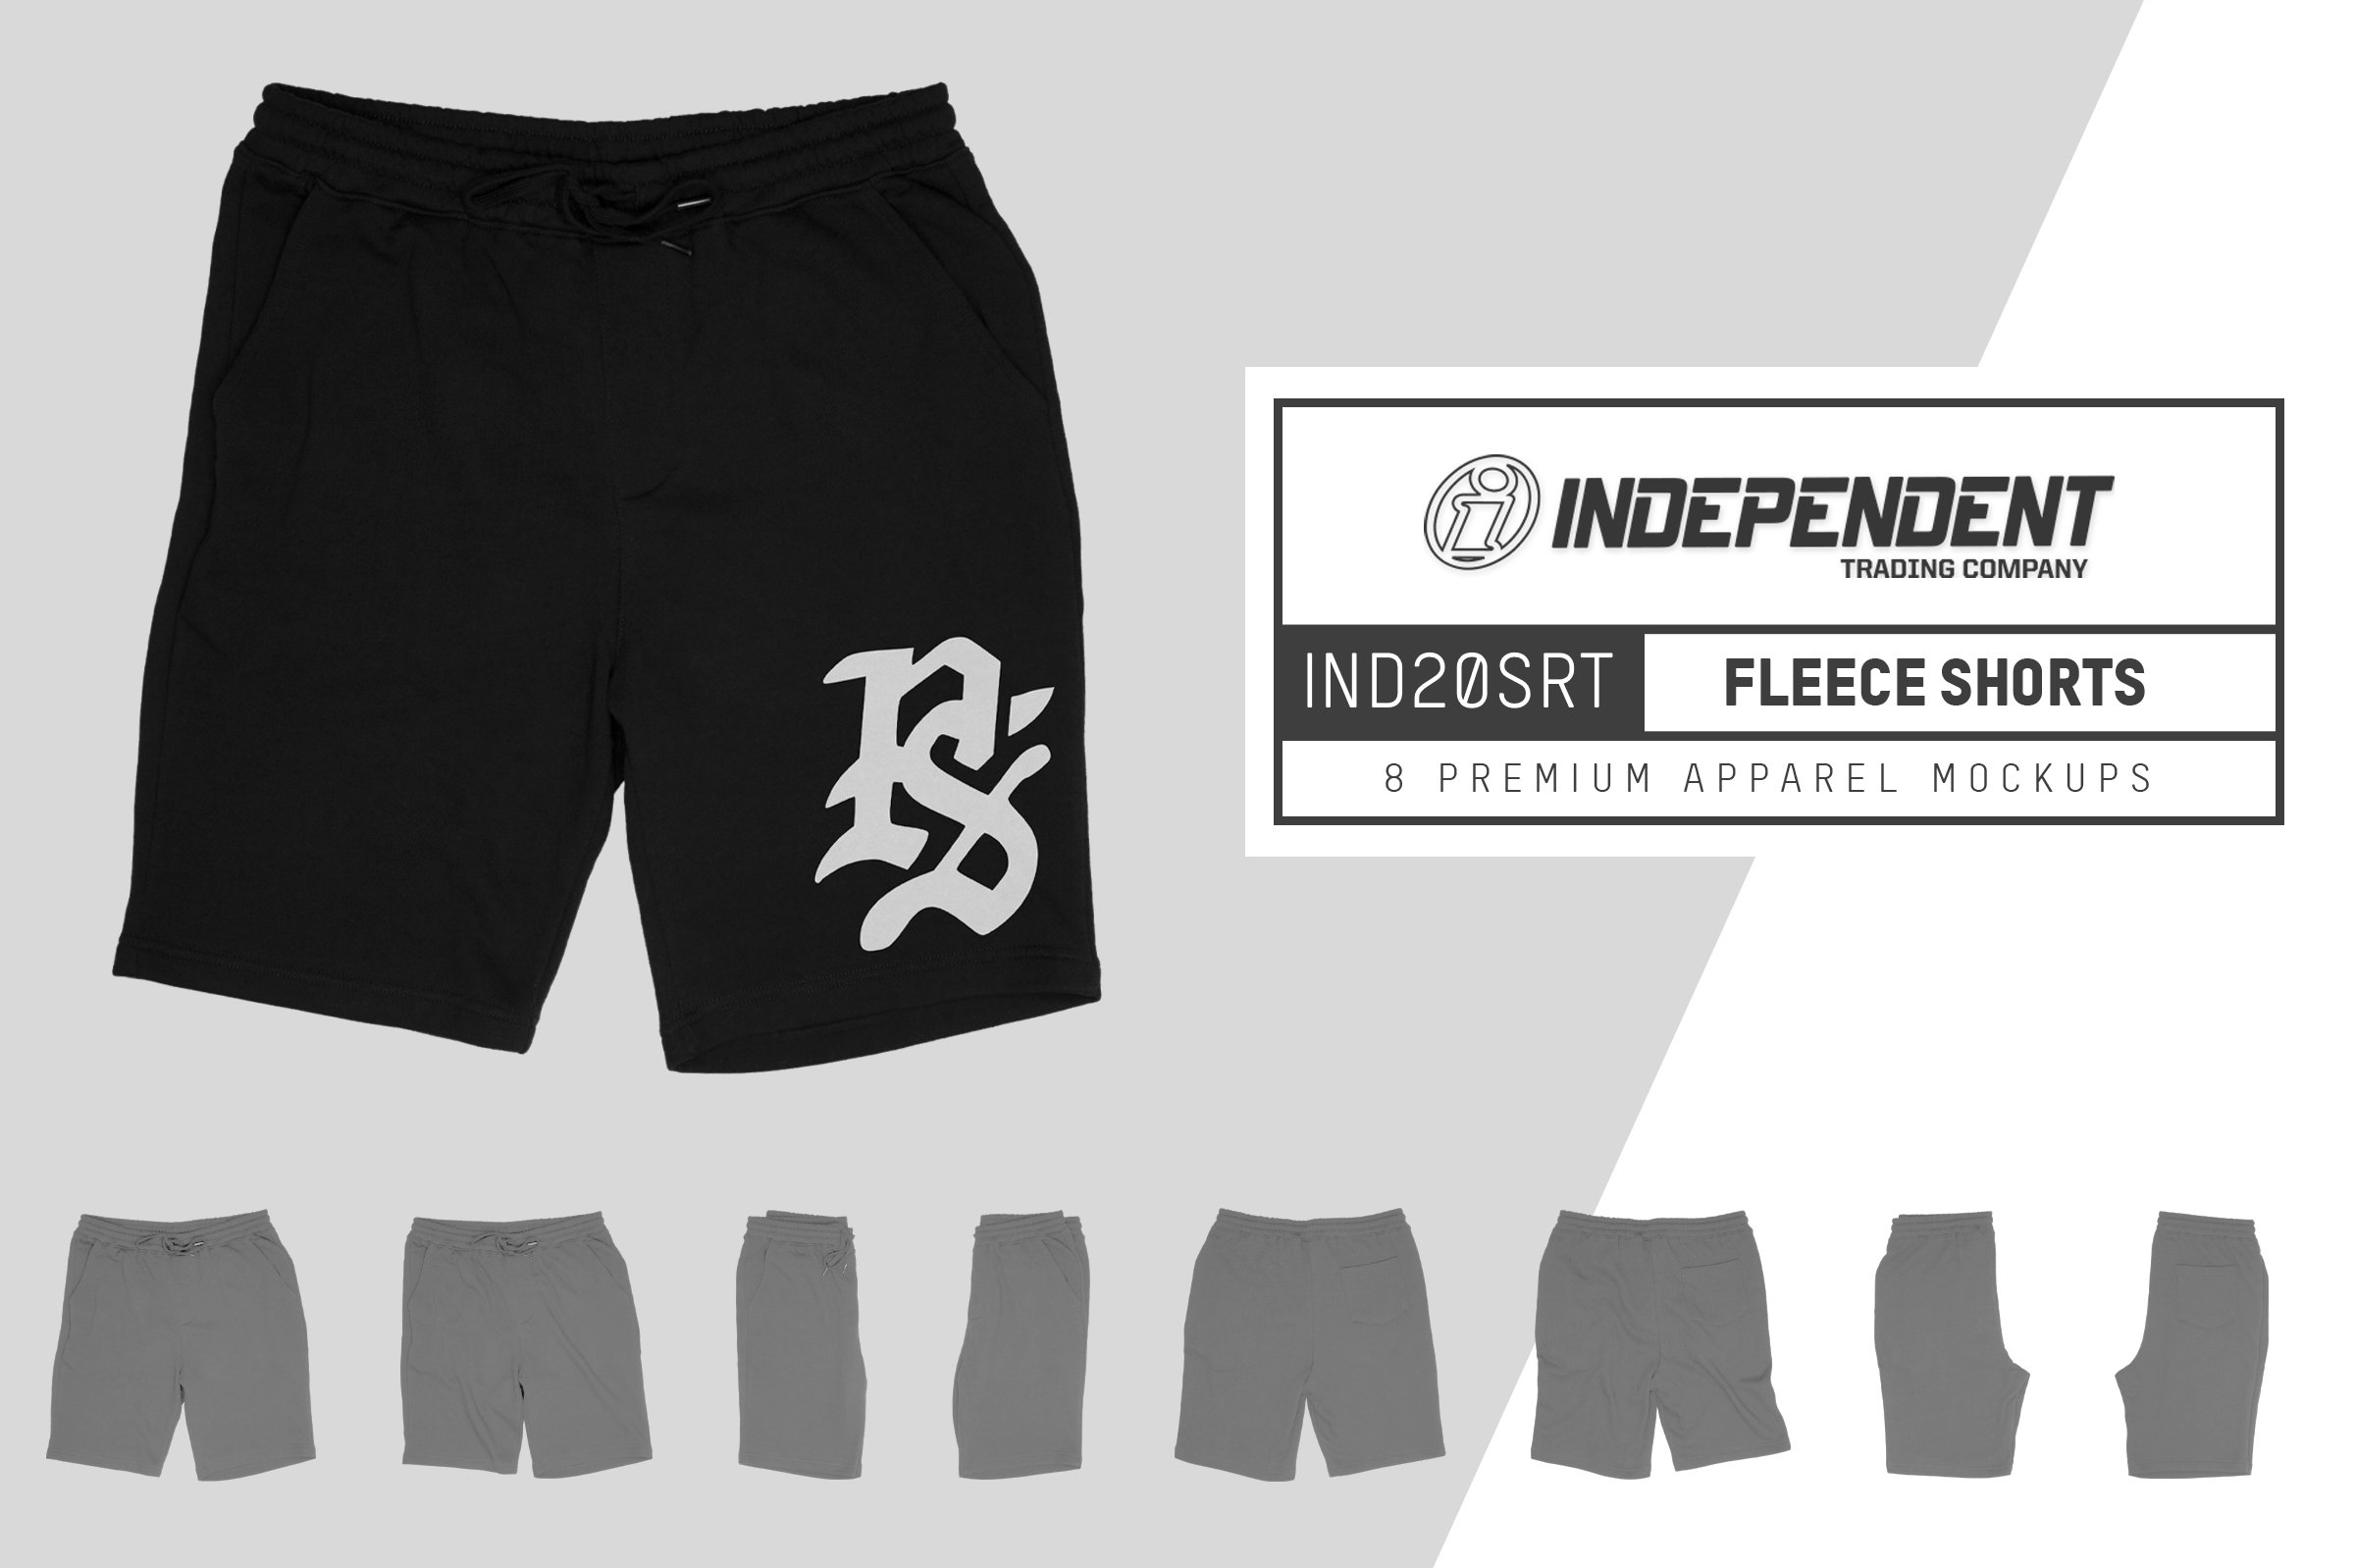 Independent IND20SRT Fleece Shorts cover image.